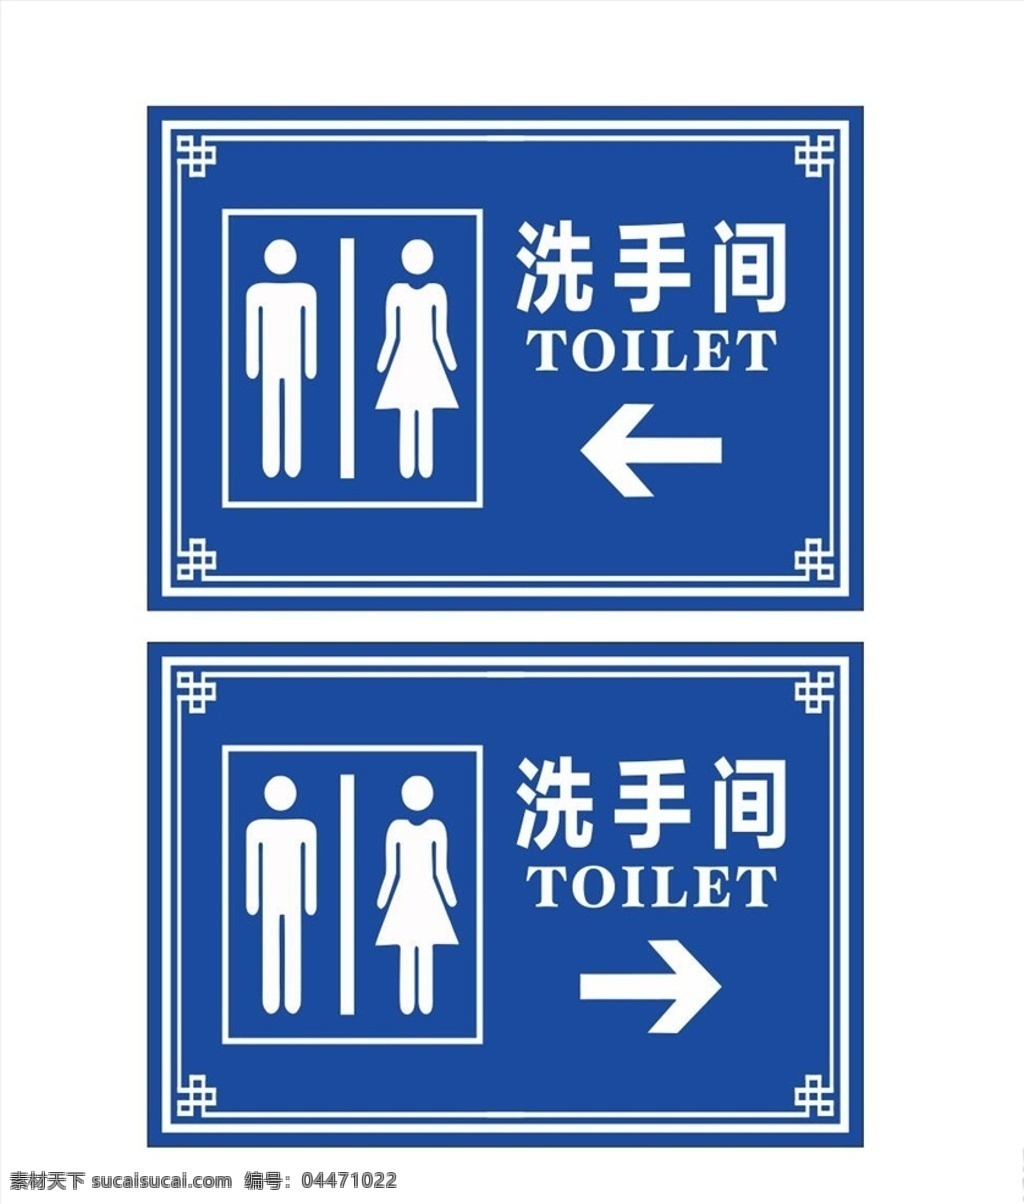 洗手间指示牌 洗手间 指示牌 卫生间 厕所 指路牌 男女图标 卫生间图标 洗手间图标 厕所图标 图标 toliet 指路标牌 标牌